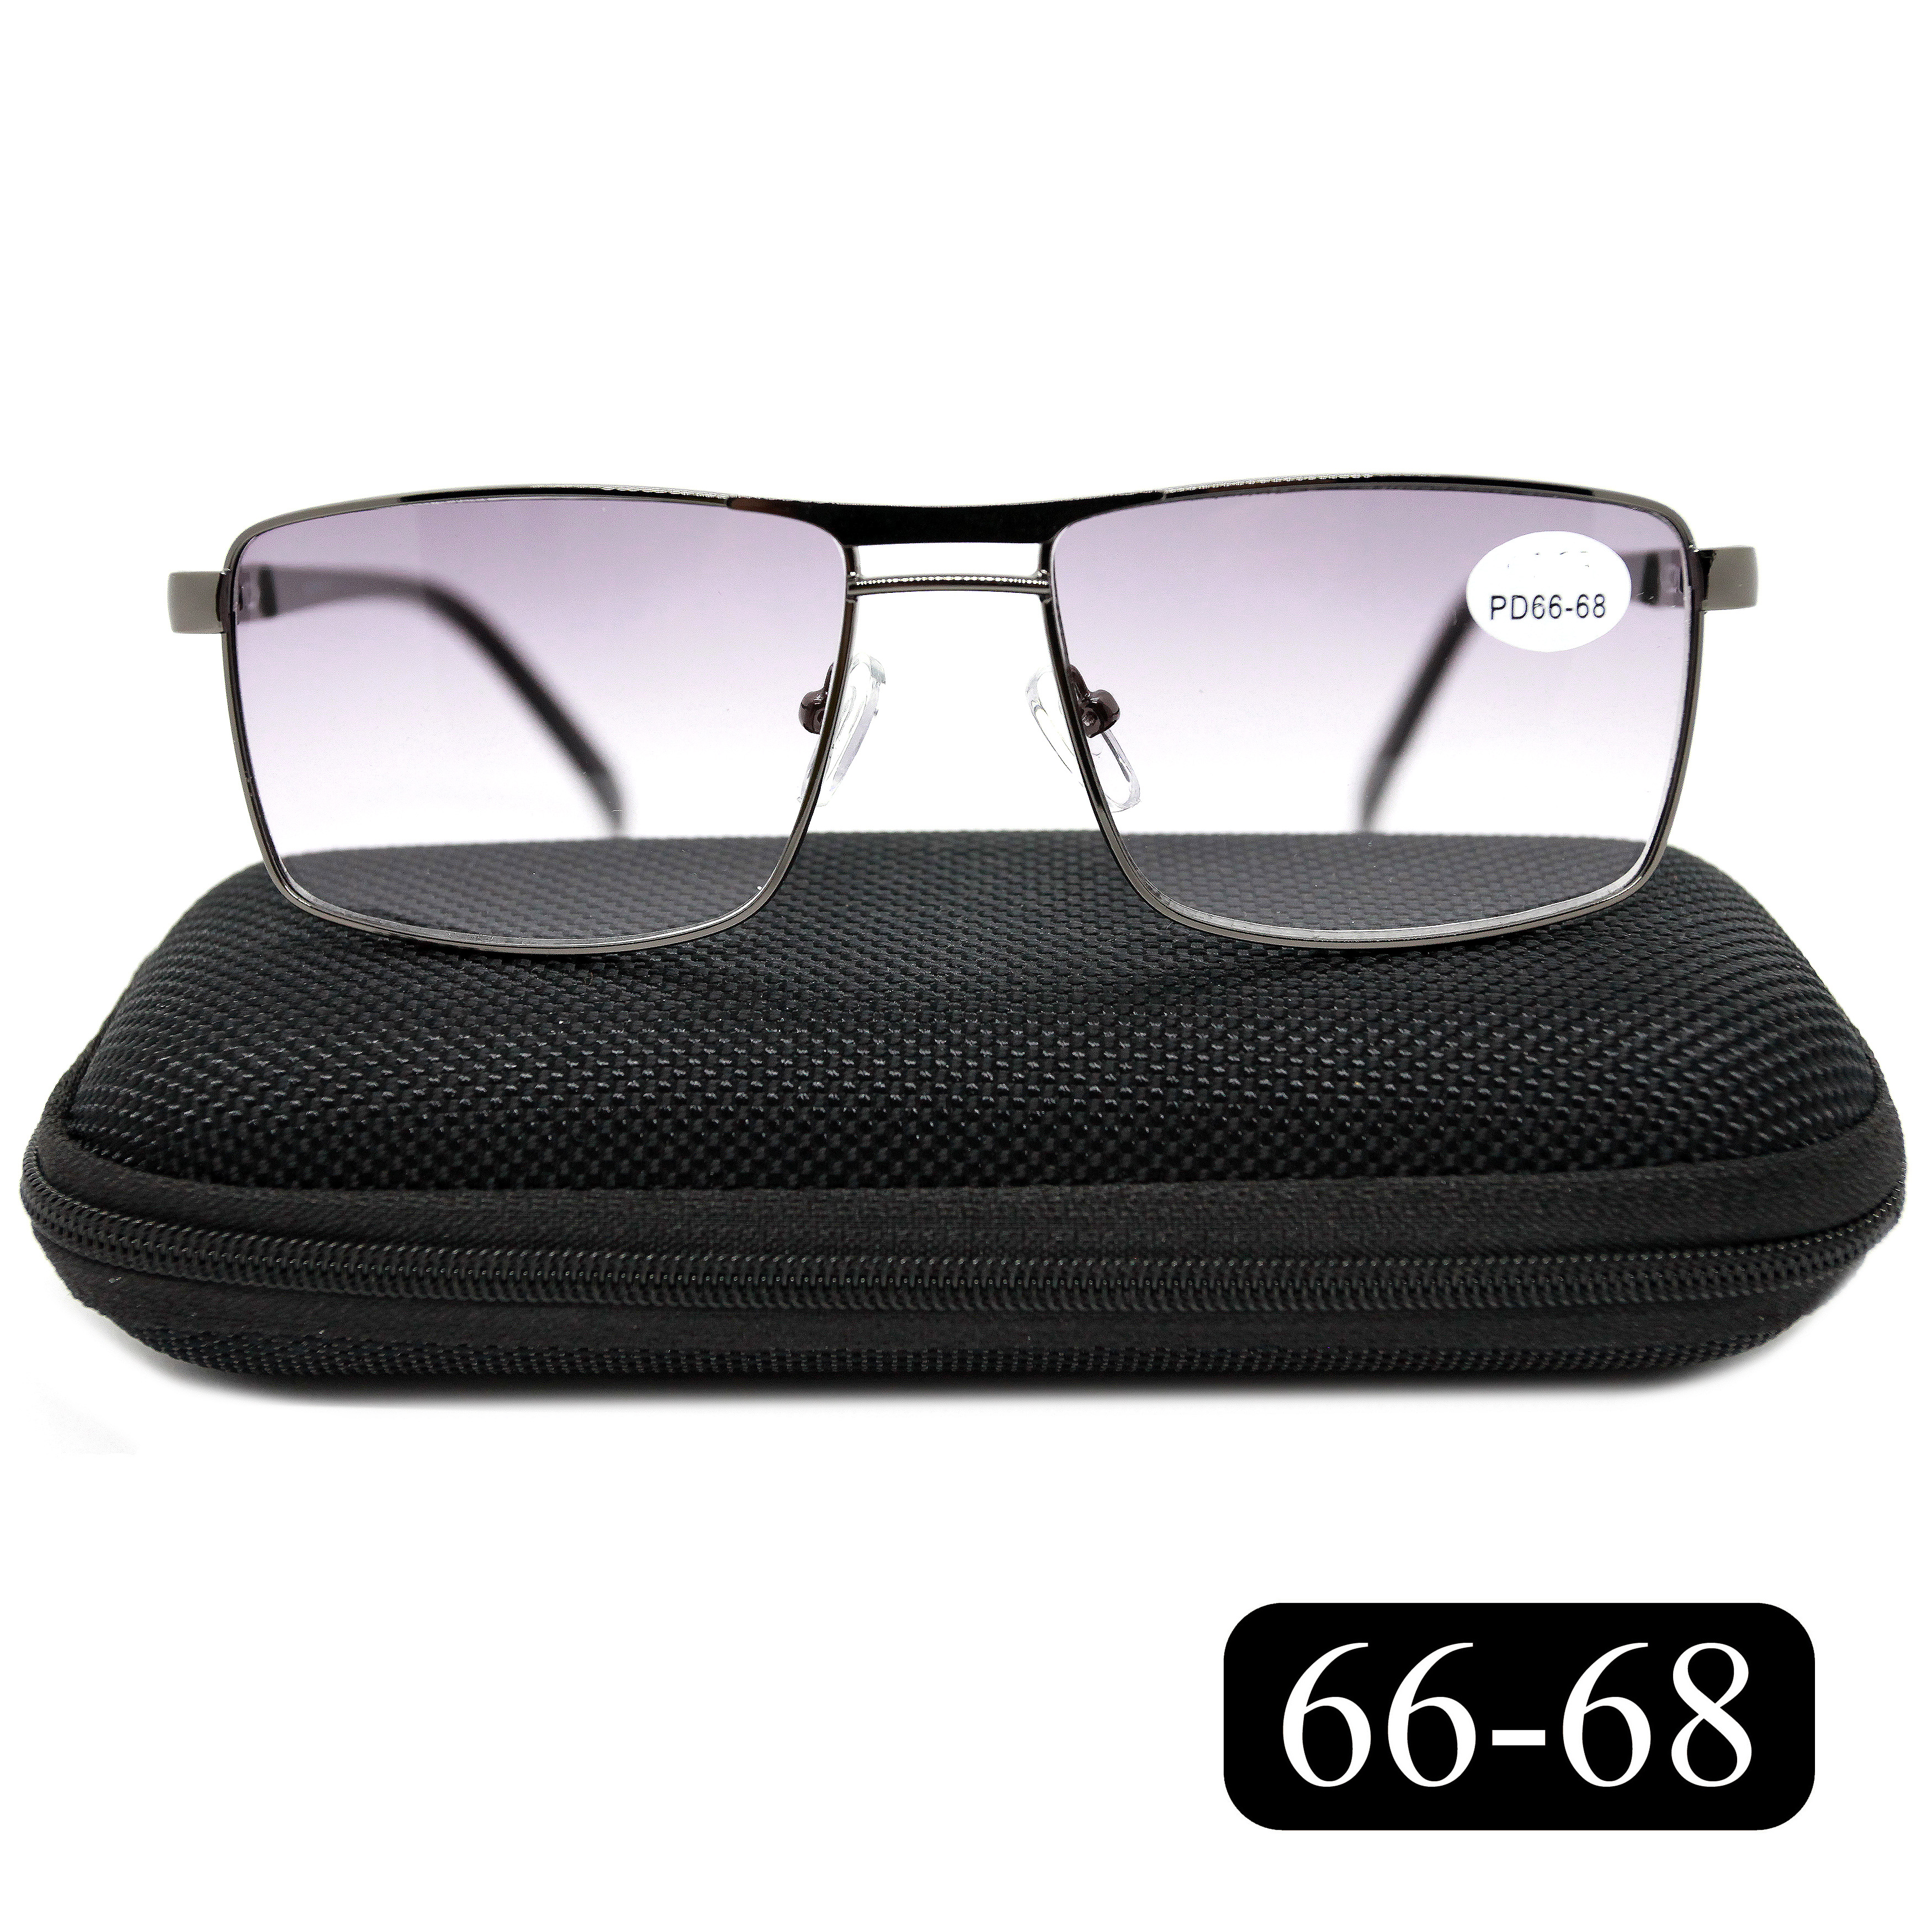 Готовые очки Salivio 5009 +1,75, c футляром, с тонировкой, черный, РЦ 66-68